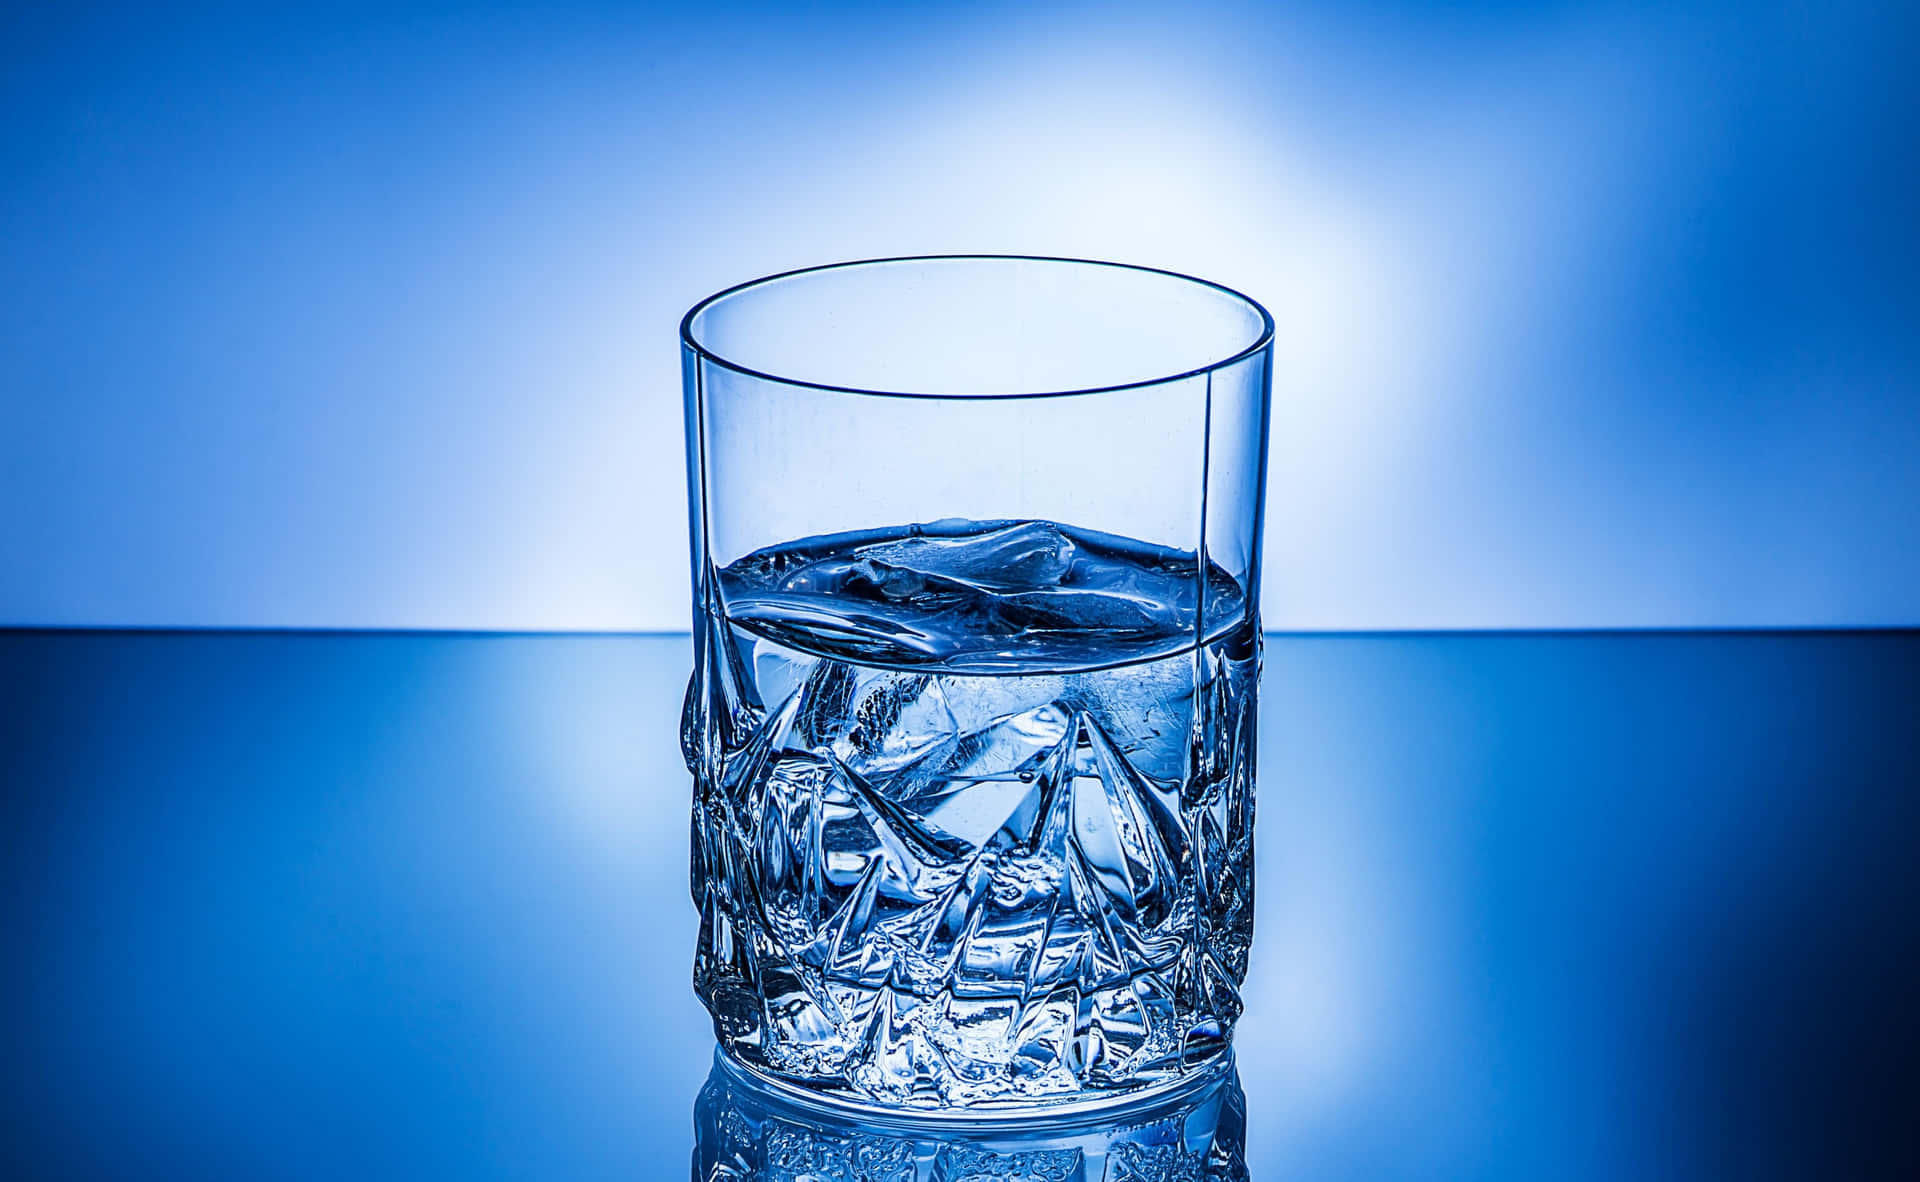 Refreshing glass of water